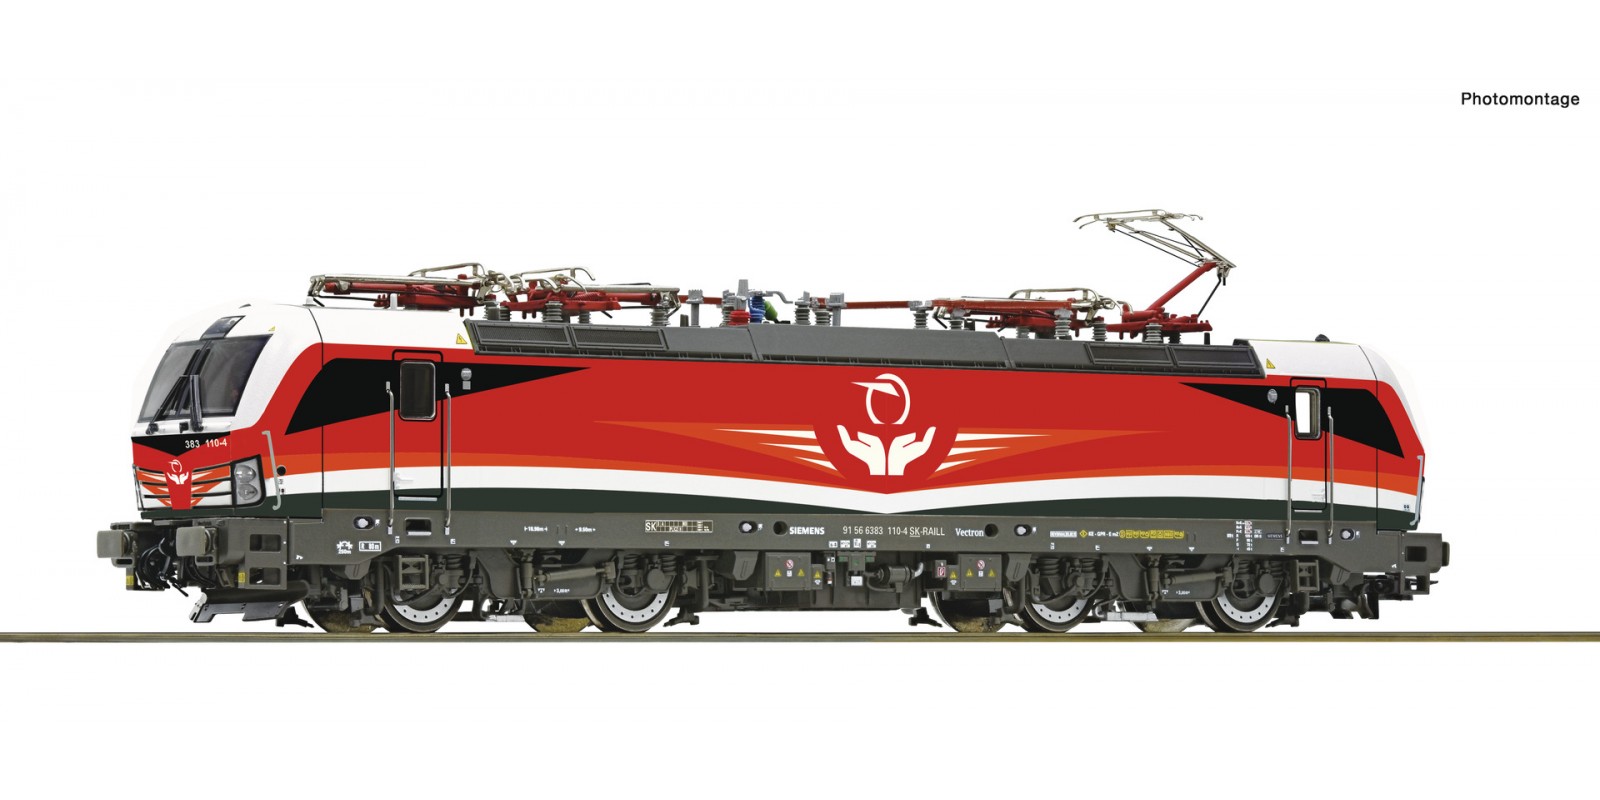 RO73914 Electric locomotive 383 110-4